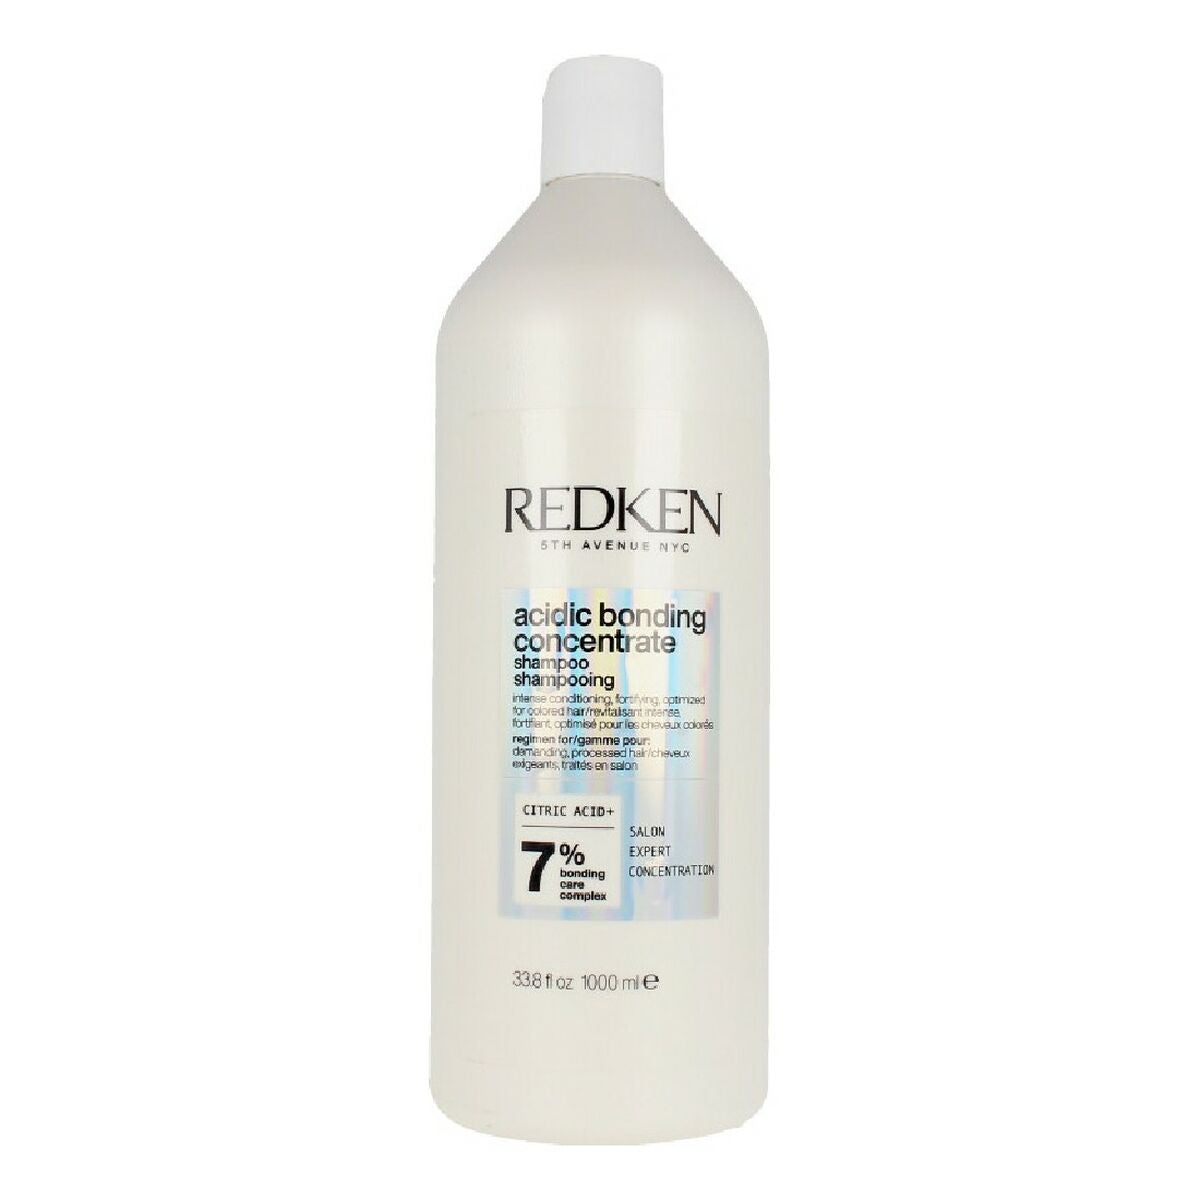 Kaufe Shampoo Acidic Bonding Concentrate Redken Acidic Bonding (1L) bei AWK Flagship um € 63.00